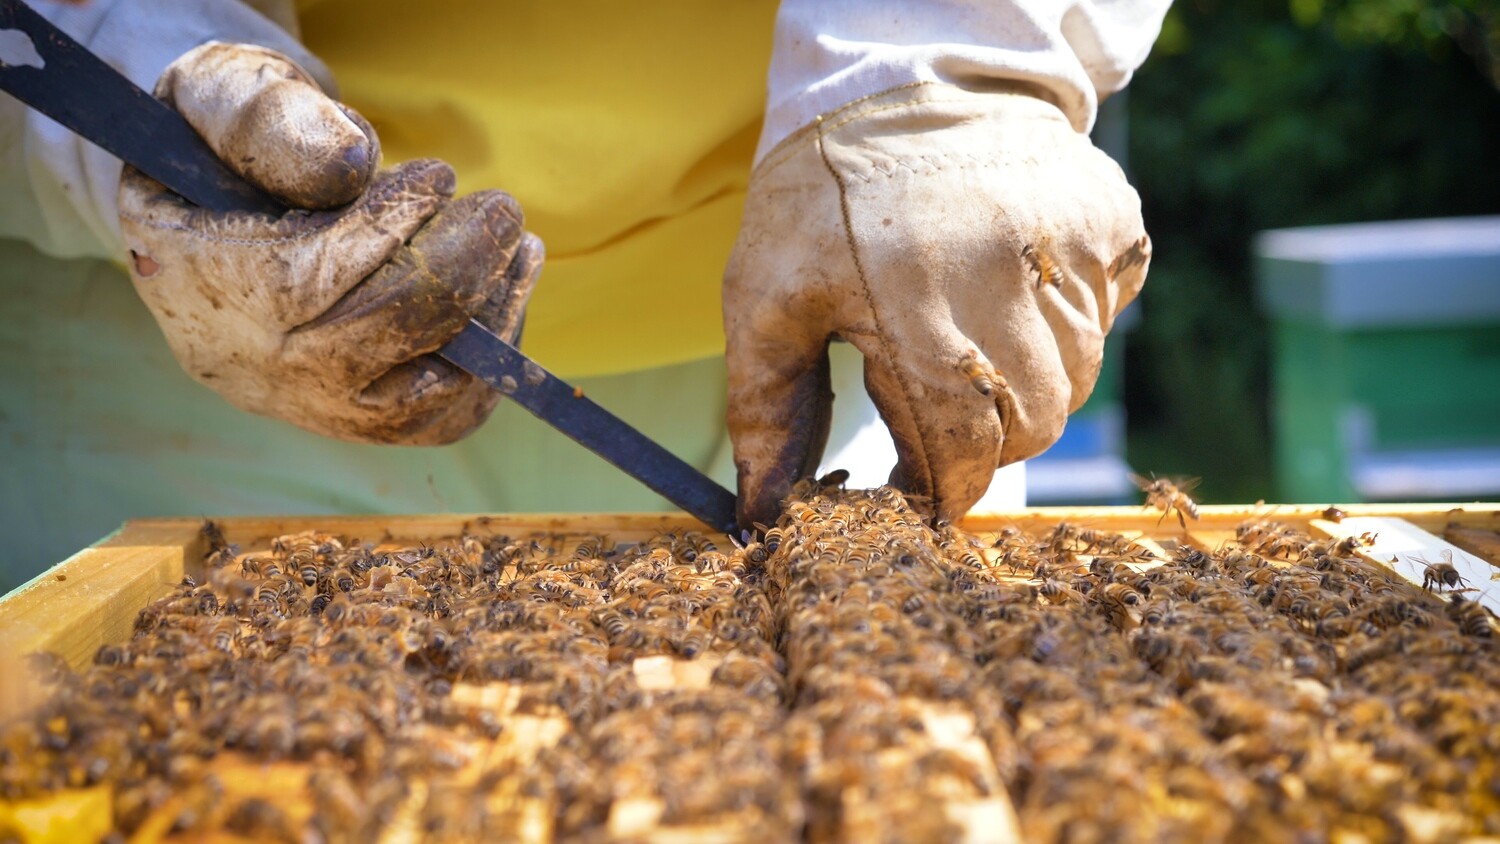 Formation en apiculture niveau débutant samedi 15 mai 2021 10h00